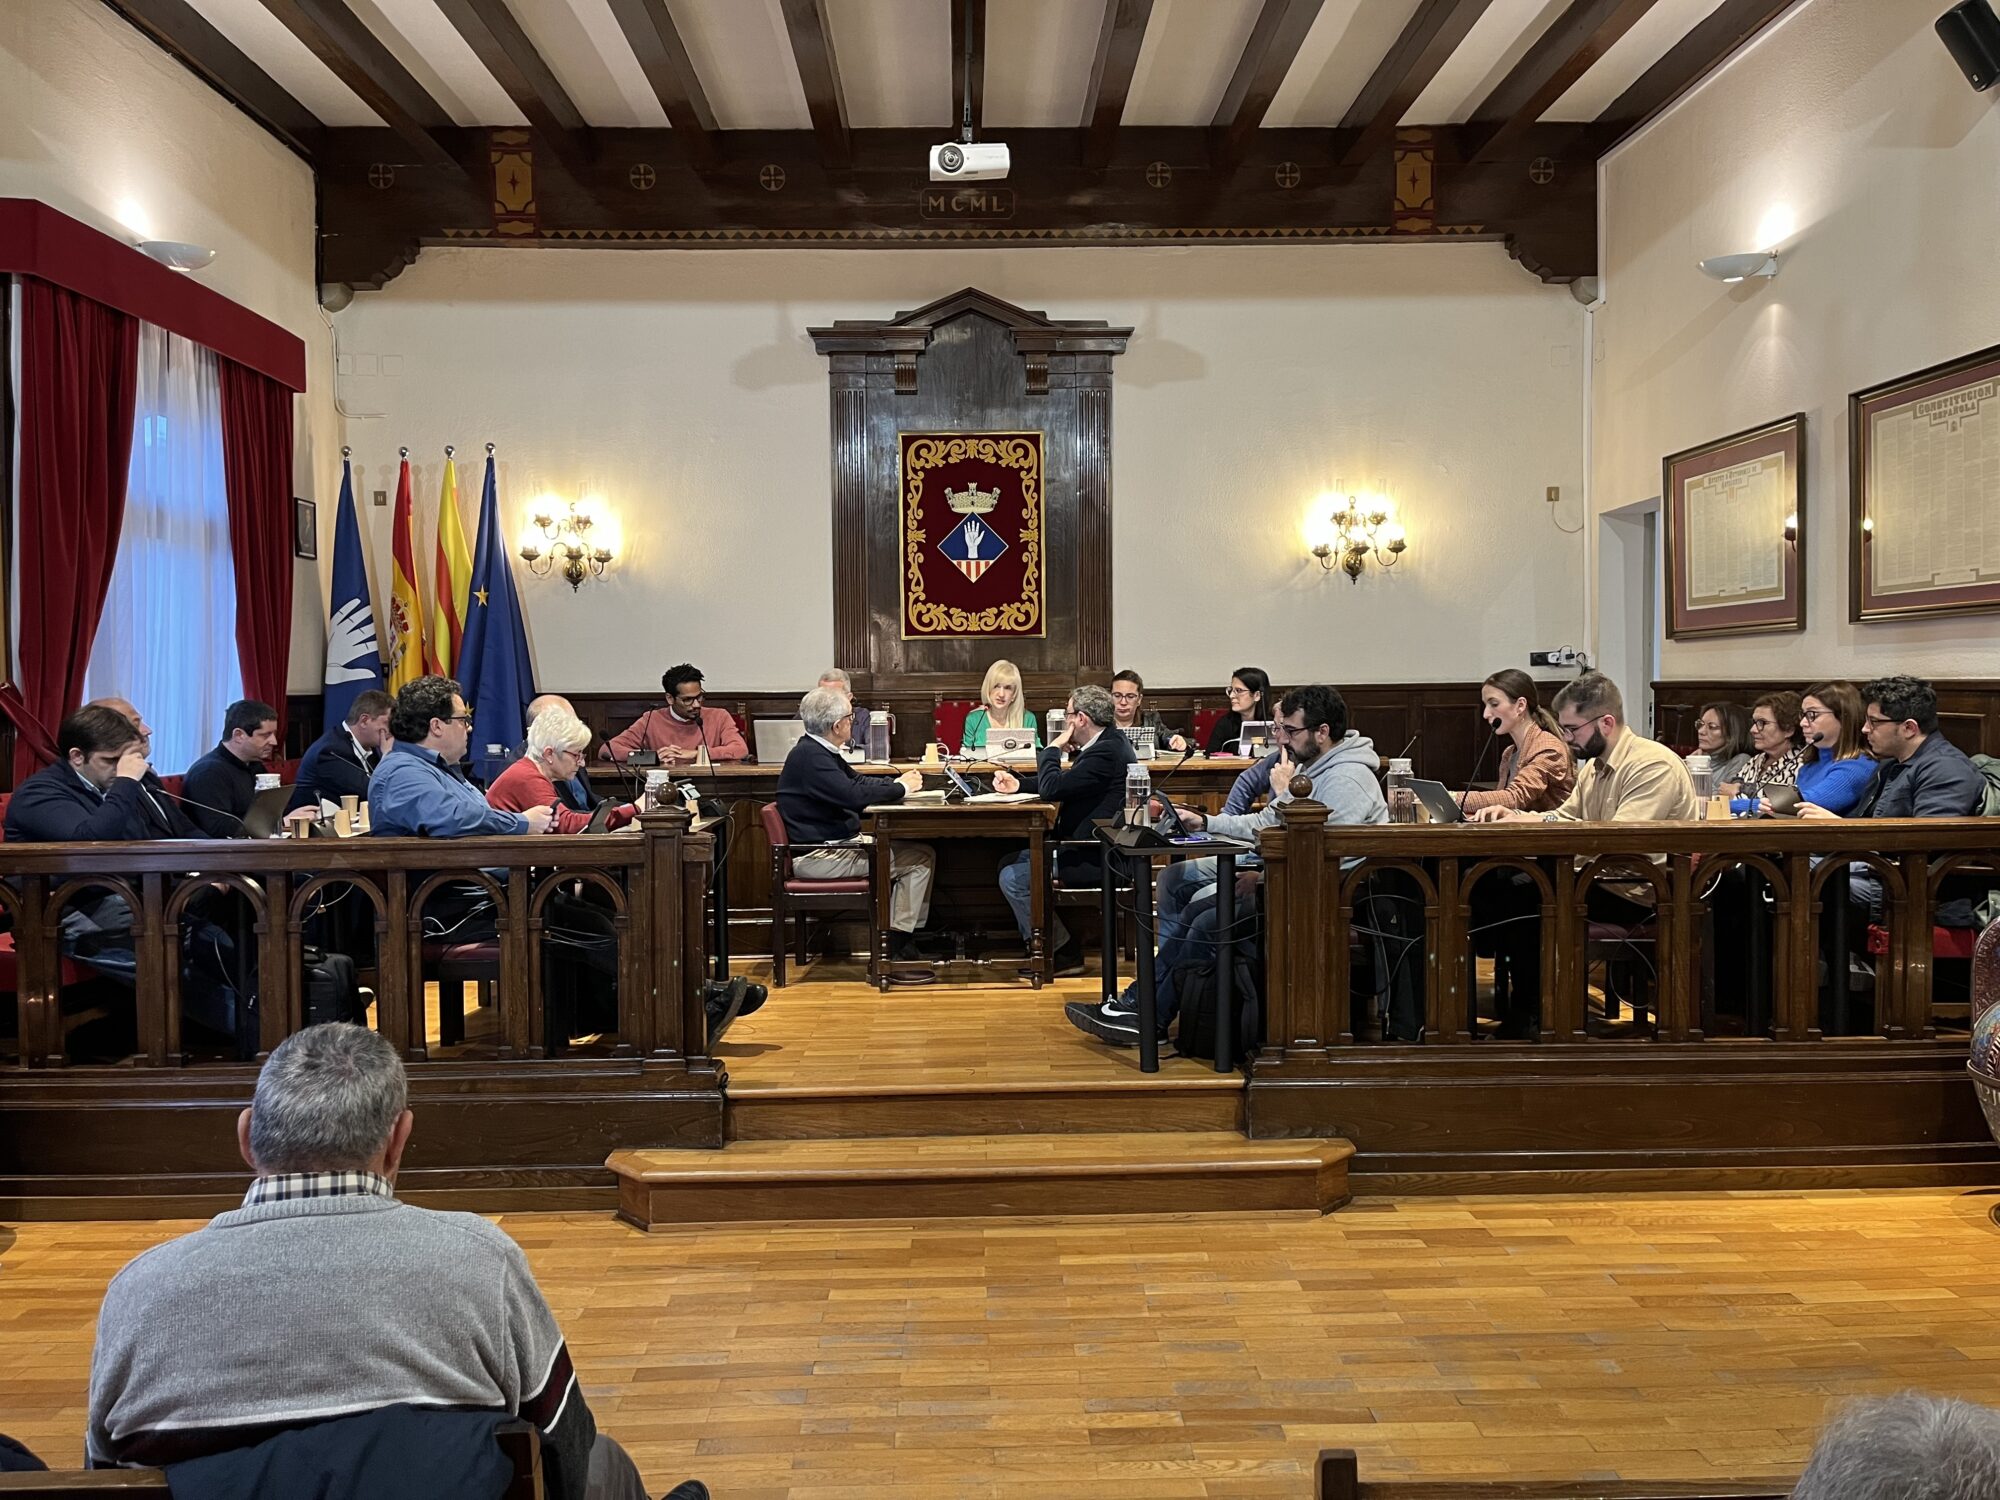 Plan general de todas las concejalas y concejales en el Salón de Plenos del Ayuntamiento de Esplugues